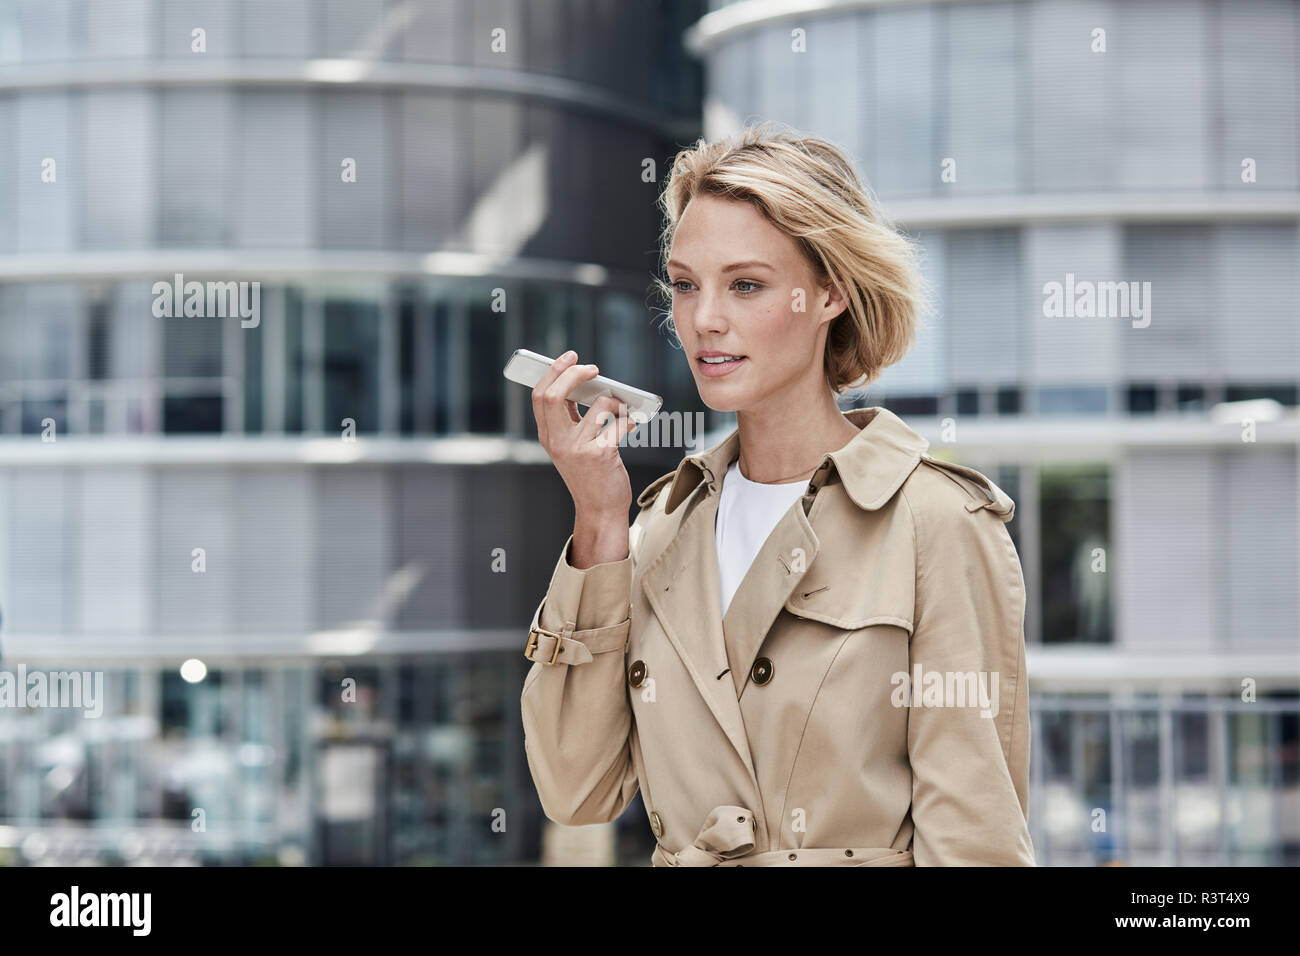 Alemania, Duesseldorf, retrato de la rubia empresaria vistiendo beige trinchera utilizando el smartphone Foto de stock